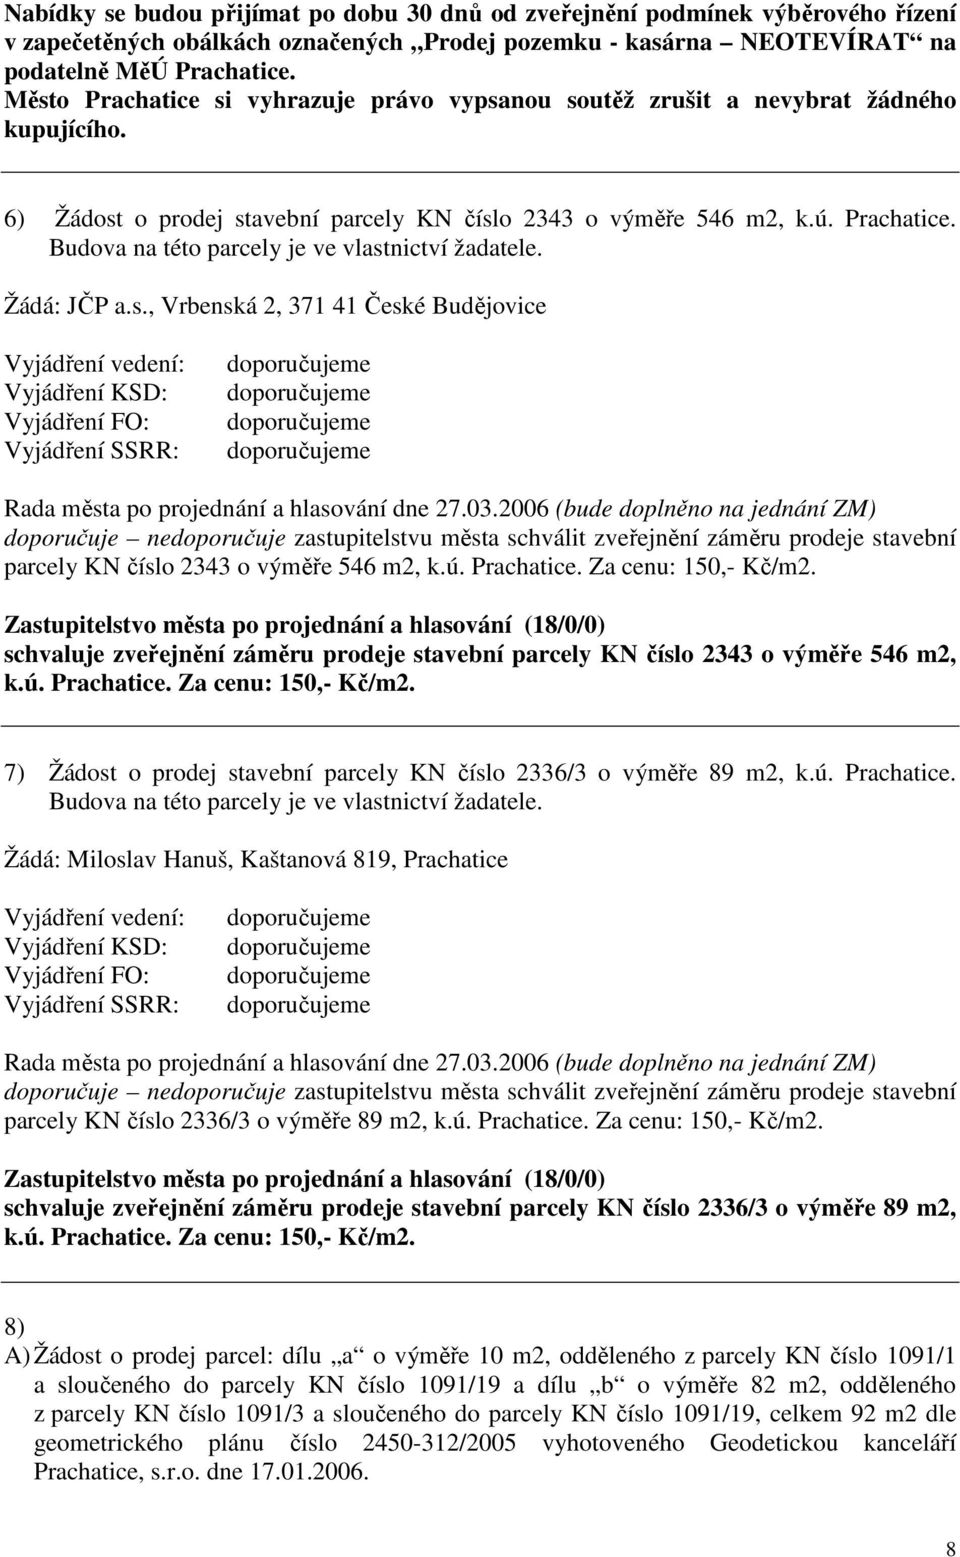 Žádá: JČP a.s., Vrbenská 2, 371 41 České Budějovice Rada města po projednání a hlasování dne 27.03.